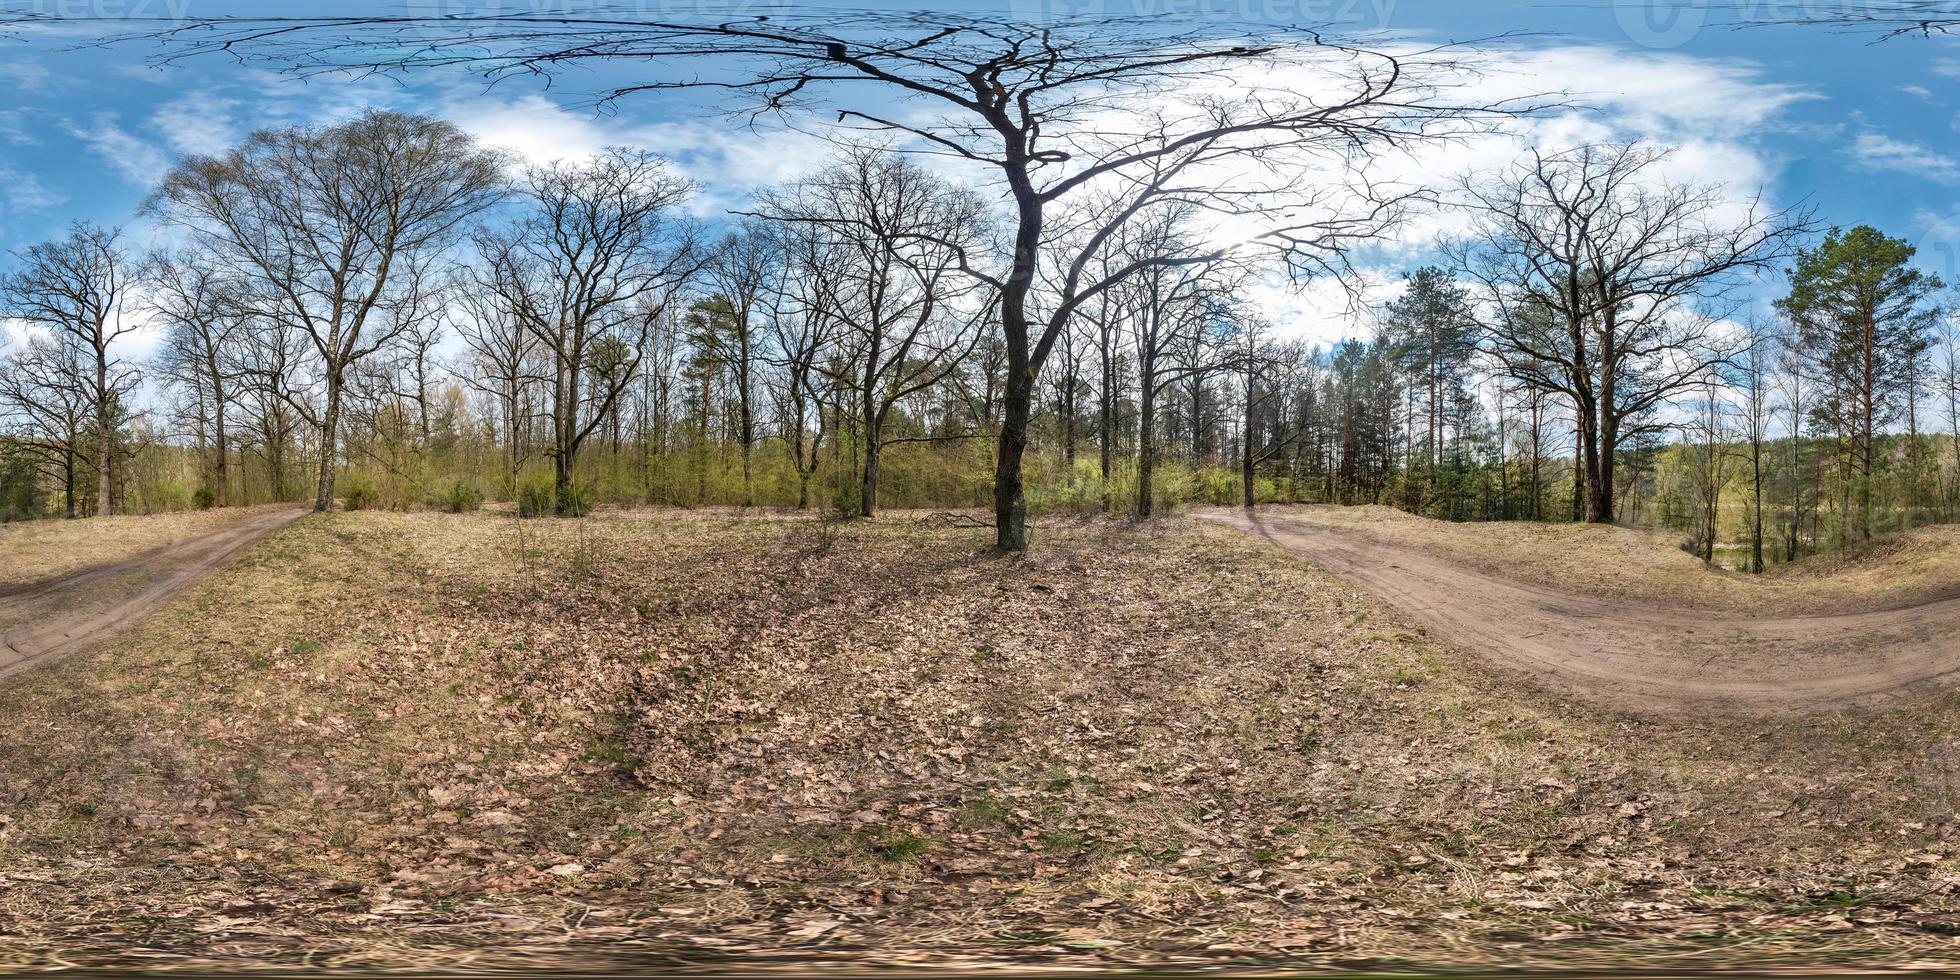 panorama hdri sphérique complet vue d'angle à 360 degrés sur le sentier piétonnier en gravier et la piste cyclable dans la forêt de pins près d'immenses chênes au printemps ensoleillé en projection équirectangulaire. contenu vr ar photo